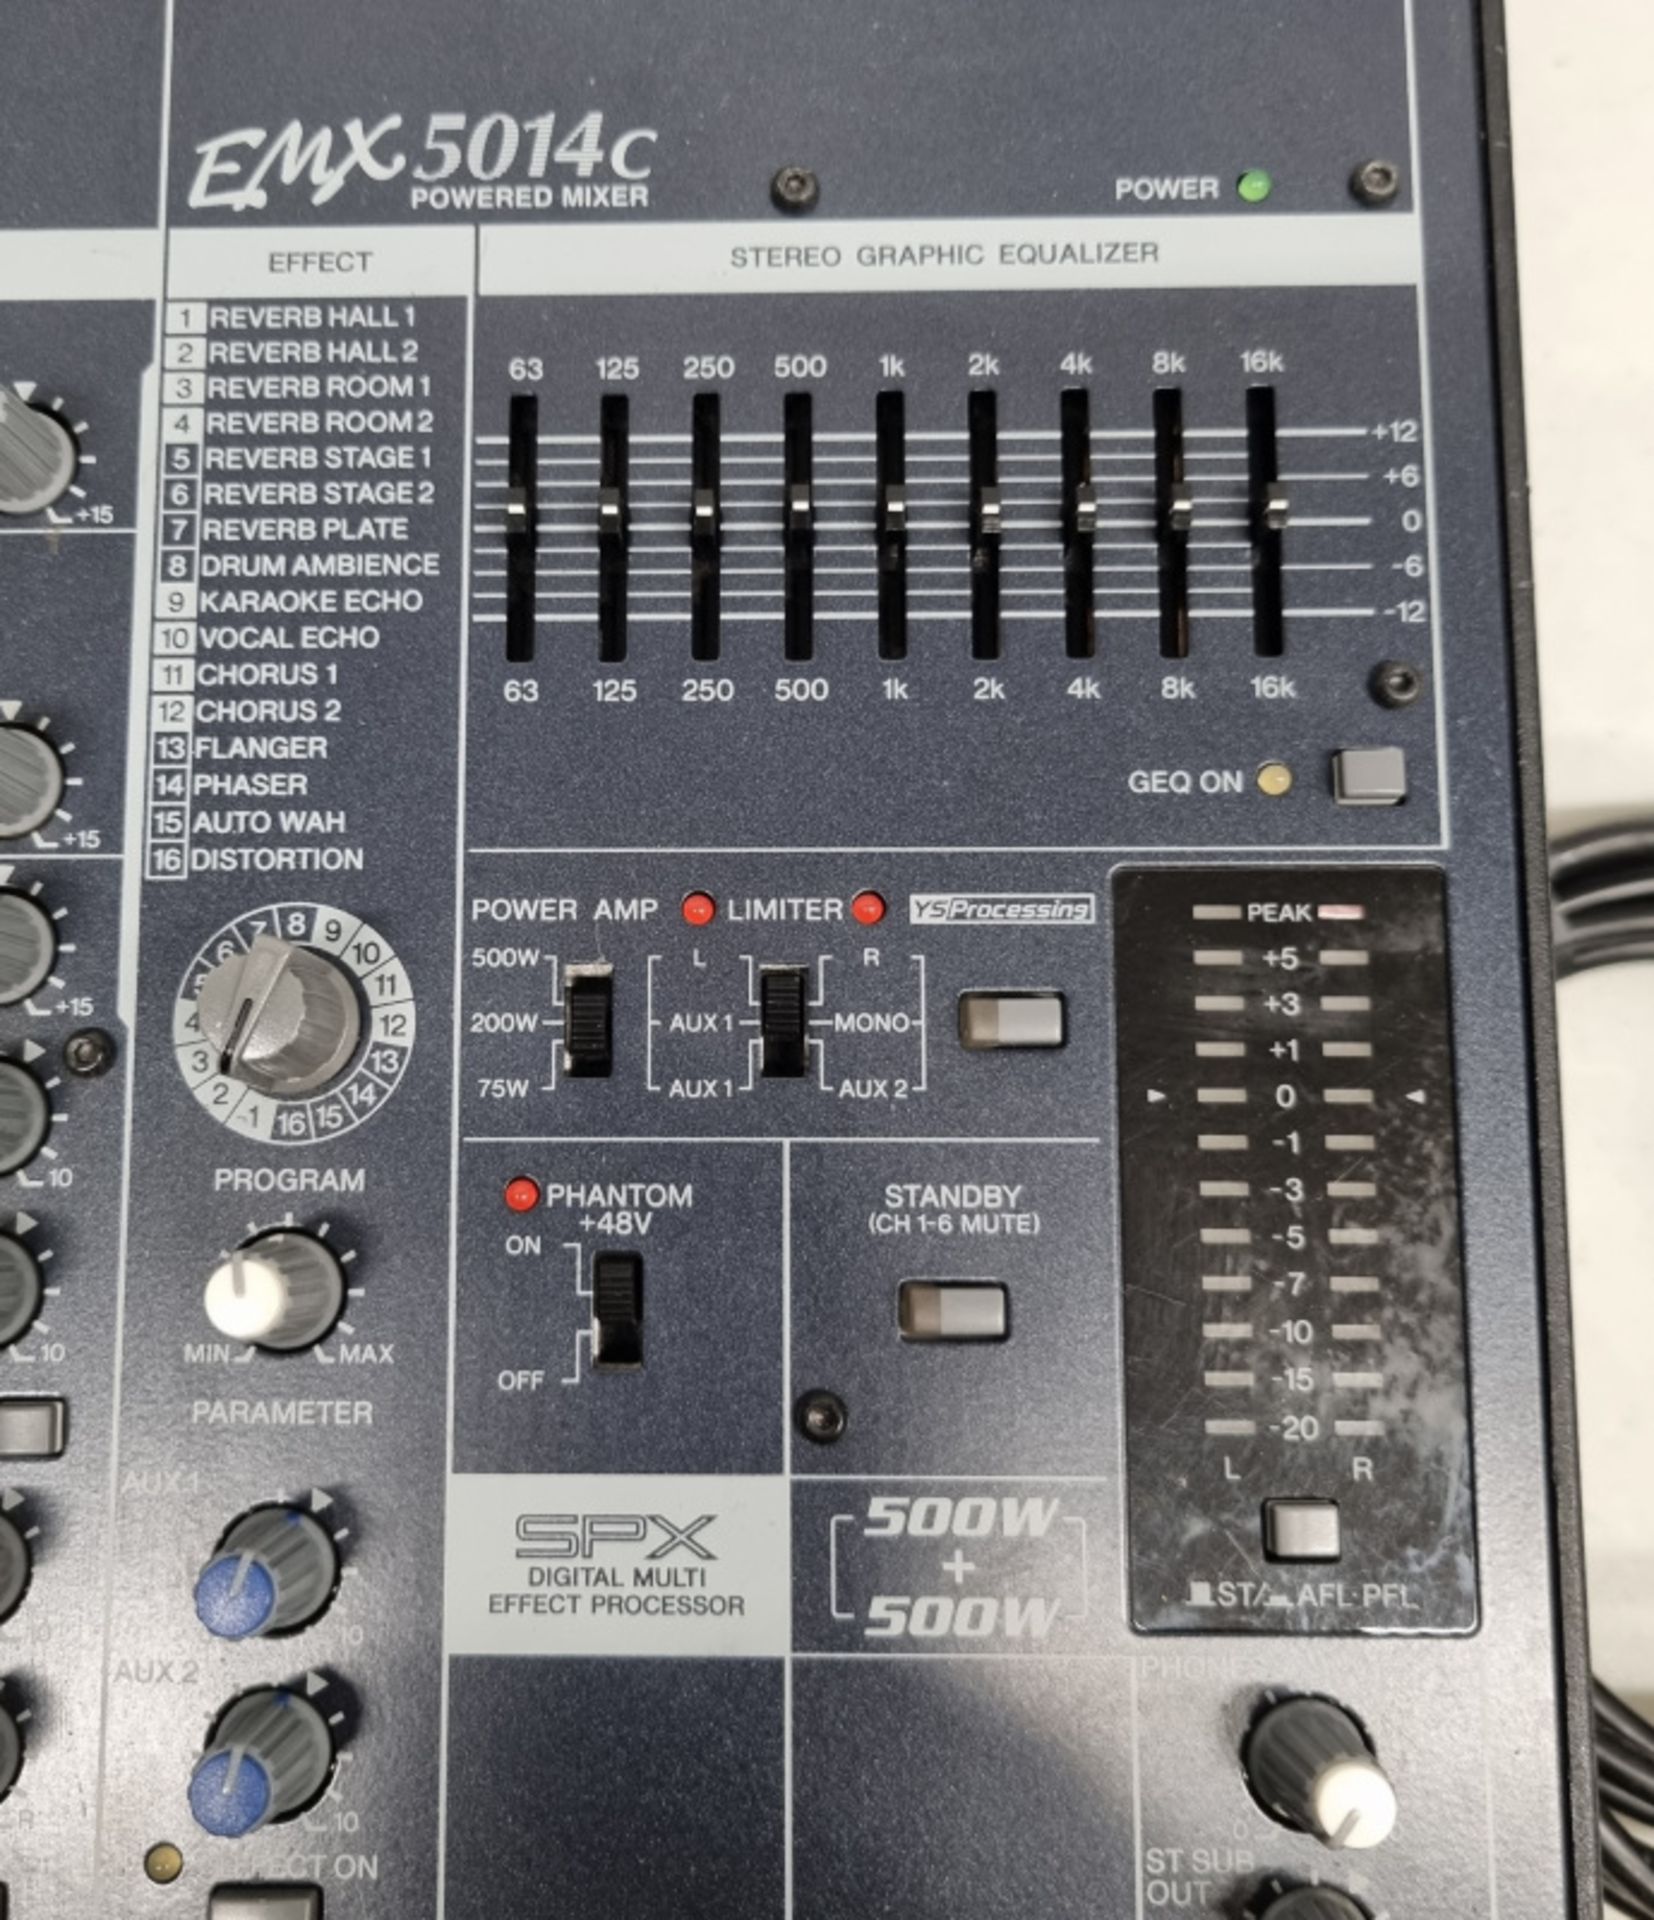 Yamaha EMX 5014C mixer in flight case - Image 2 of 5